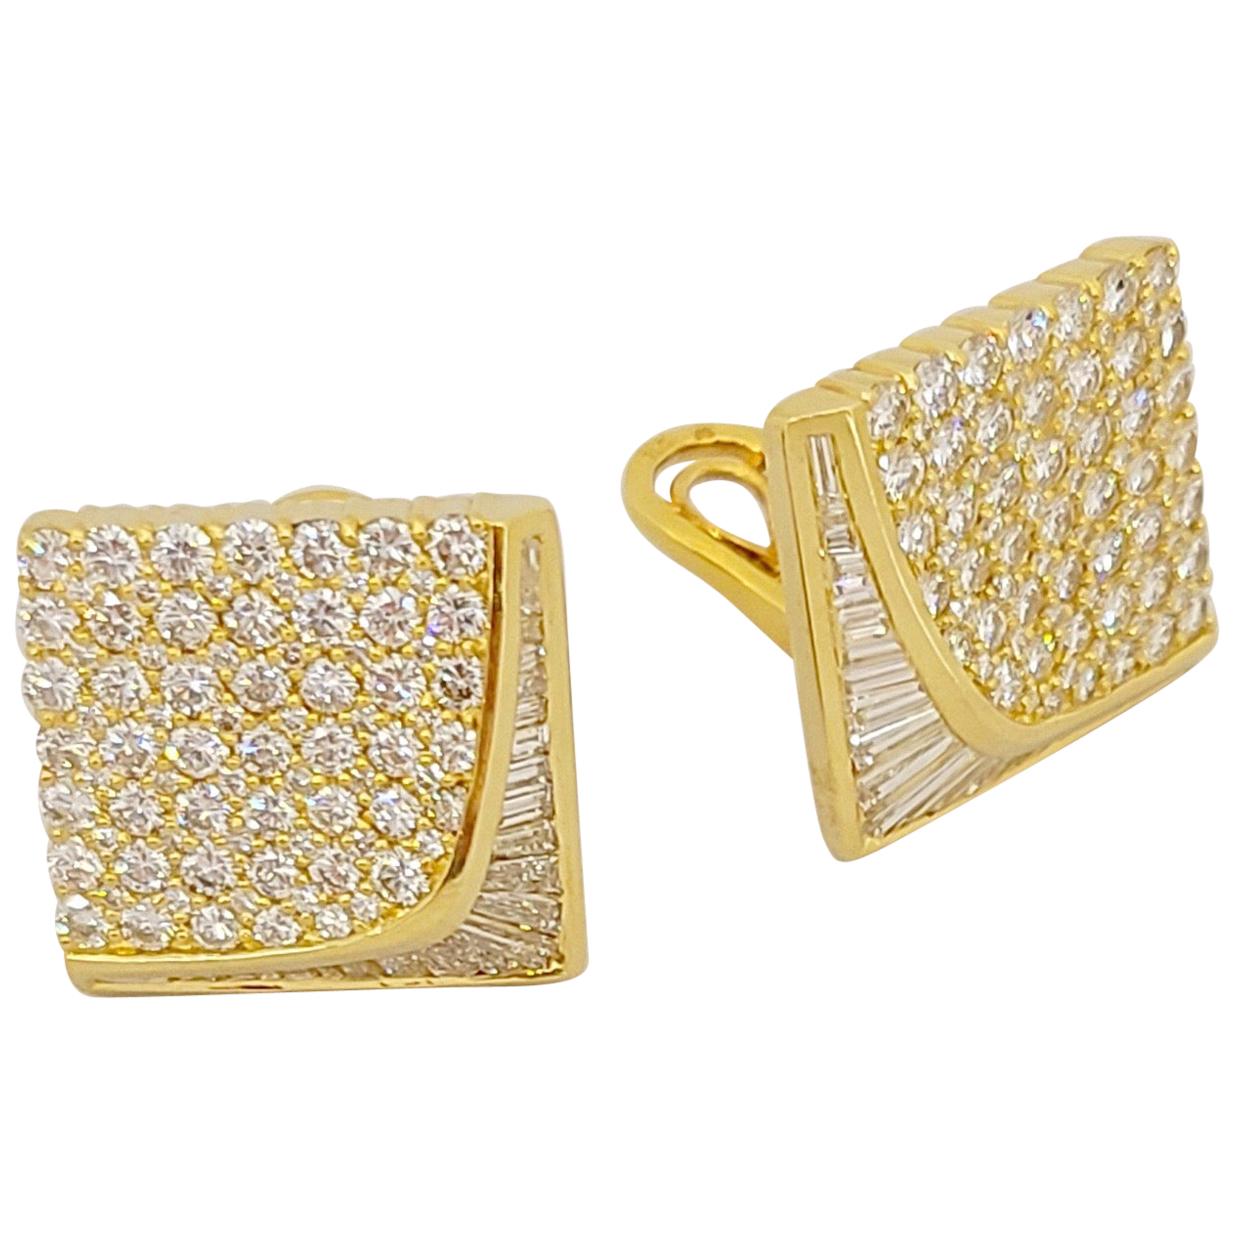 Nova 18 Karat Yellow Gold, 6.88 Carat Diamond Square Shaped Earrings